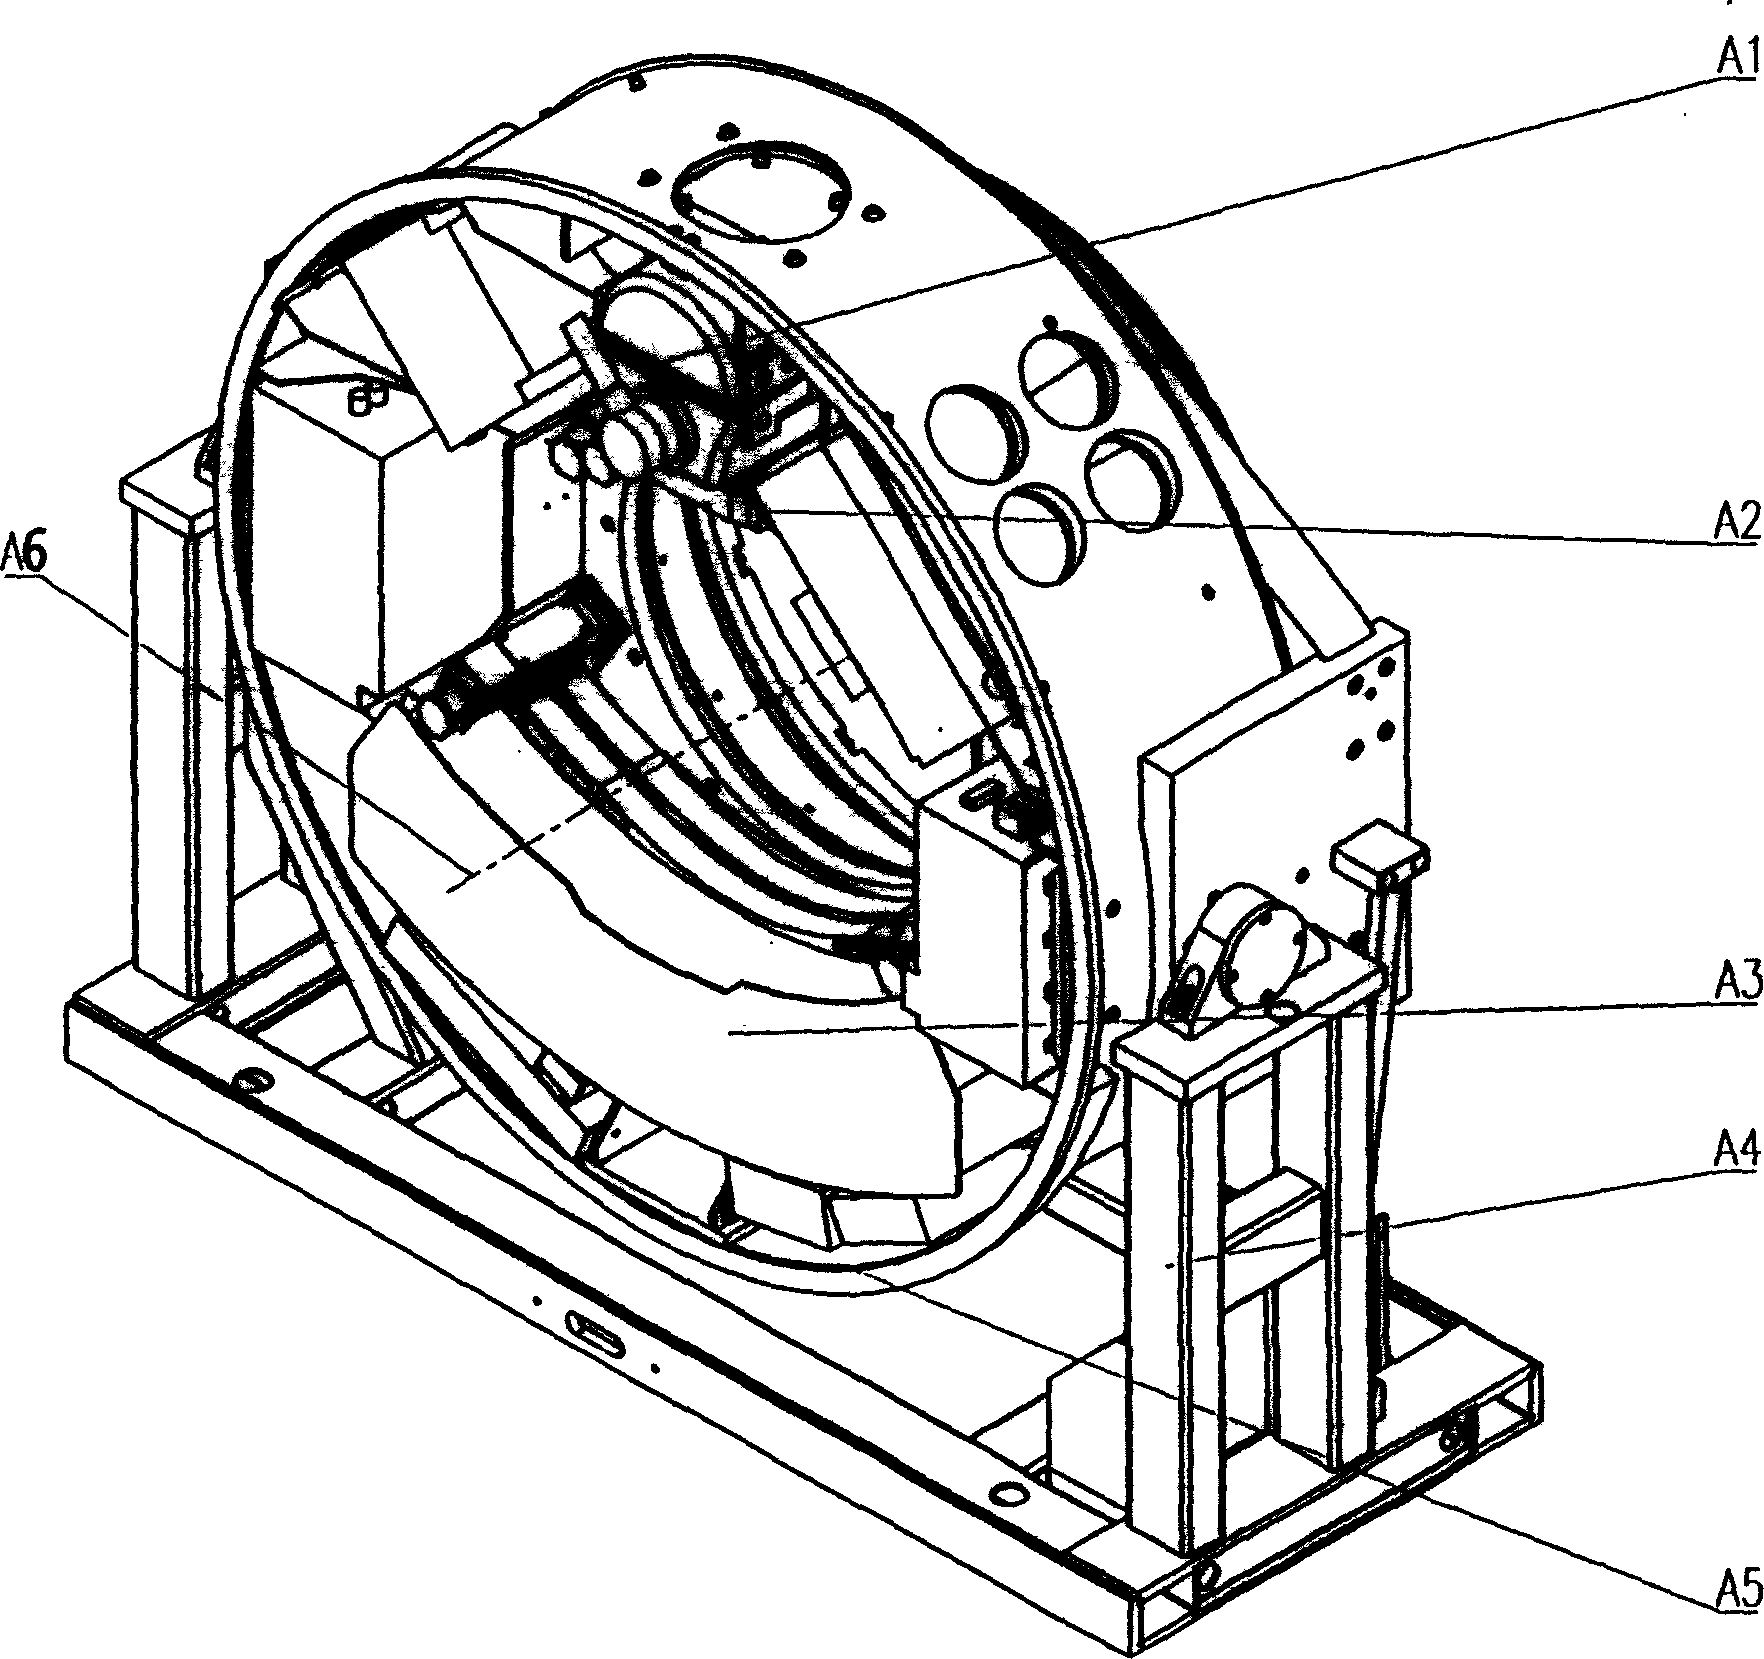 CT machine